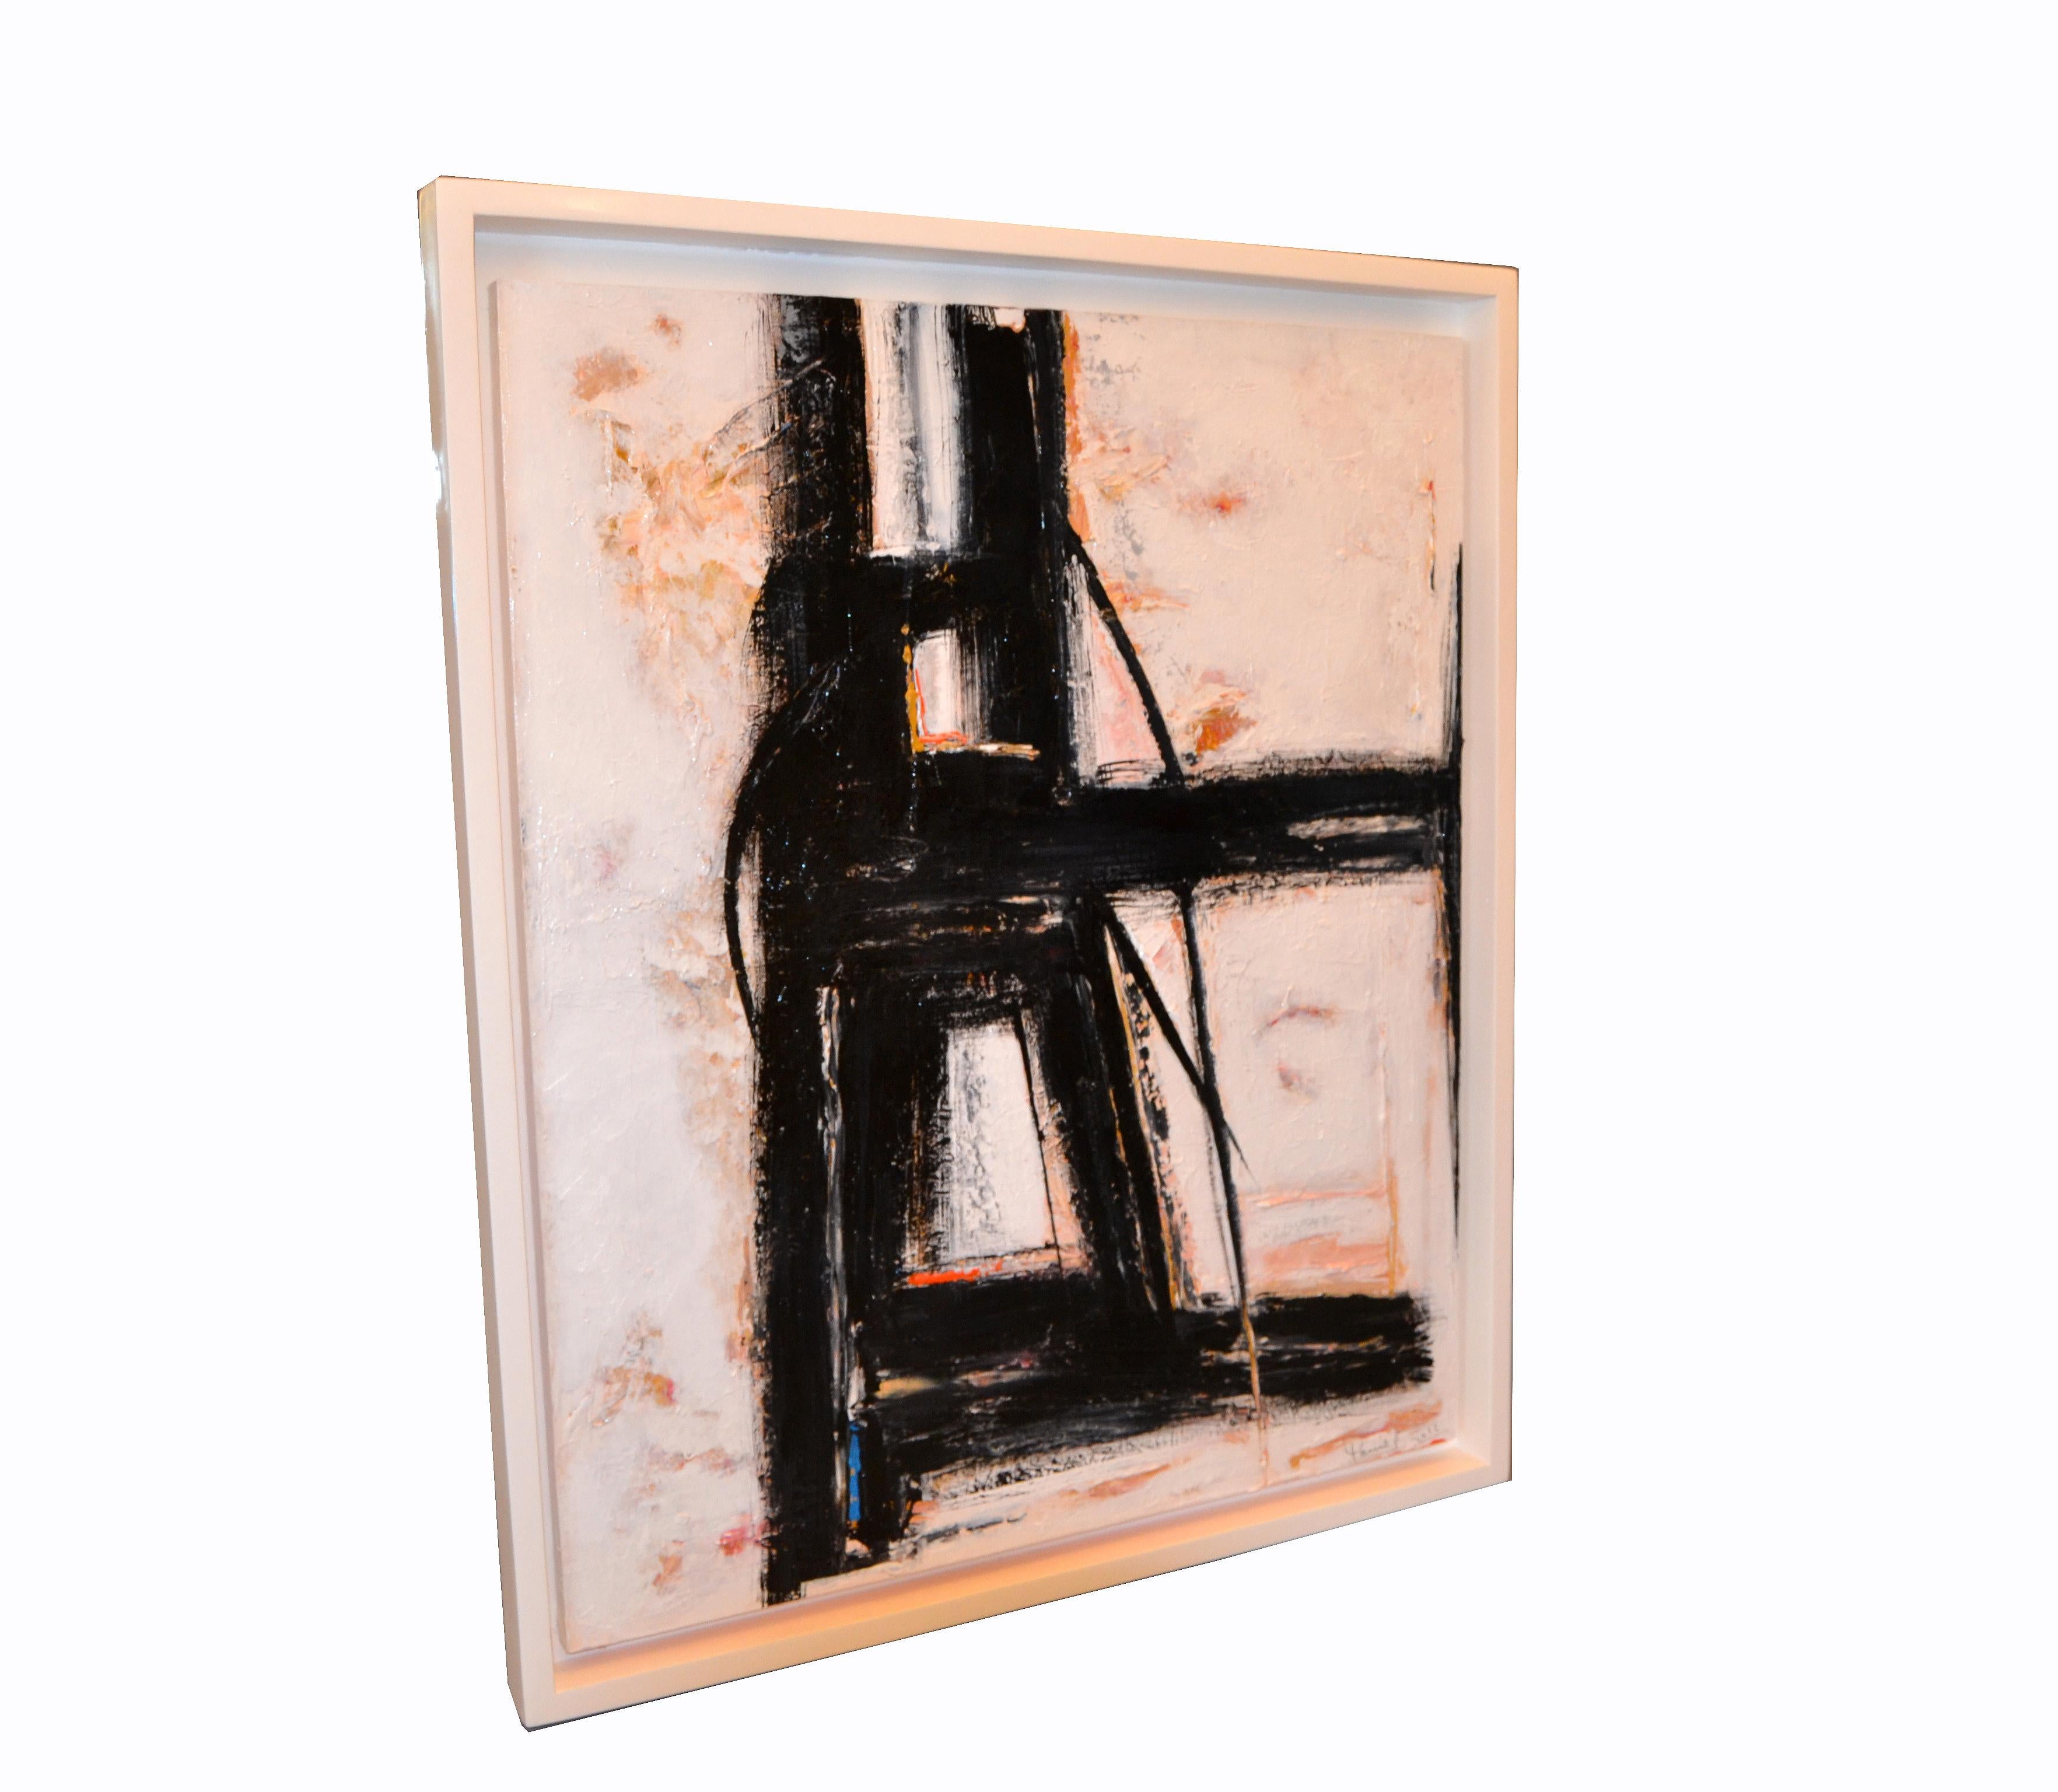 Peinture abstraite encadrée en acrylique sur toile.
Signé en bas à droite et daté 2016.
Yamil O Cardenas est né à Cuba en 1959 et s'est récemment installé à Miami, aux États-Unis.
En grandissant, il a été attiré par les œuvres de Frank Kline et a